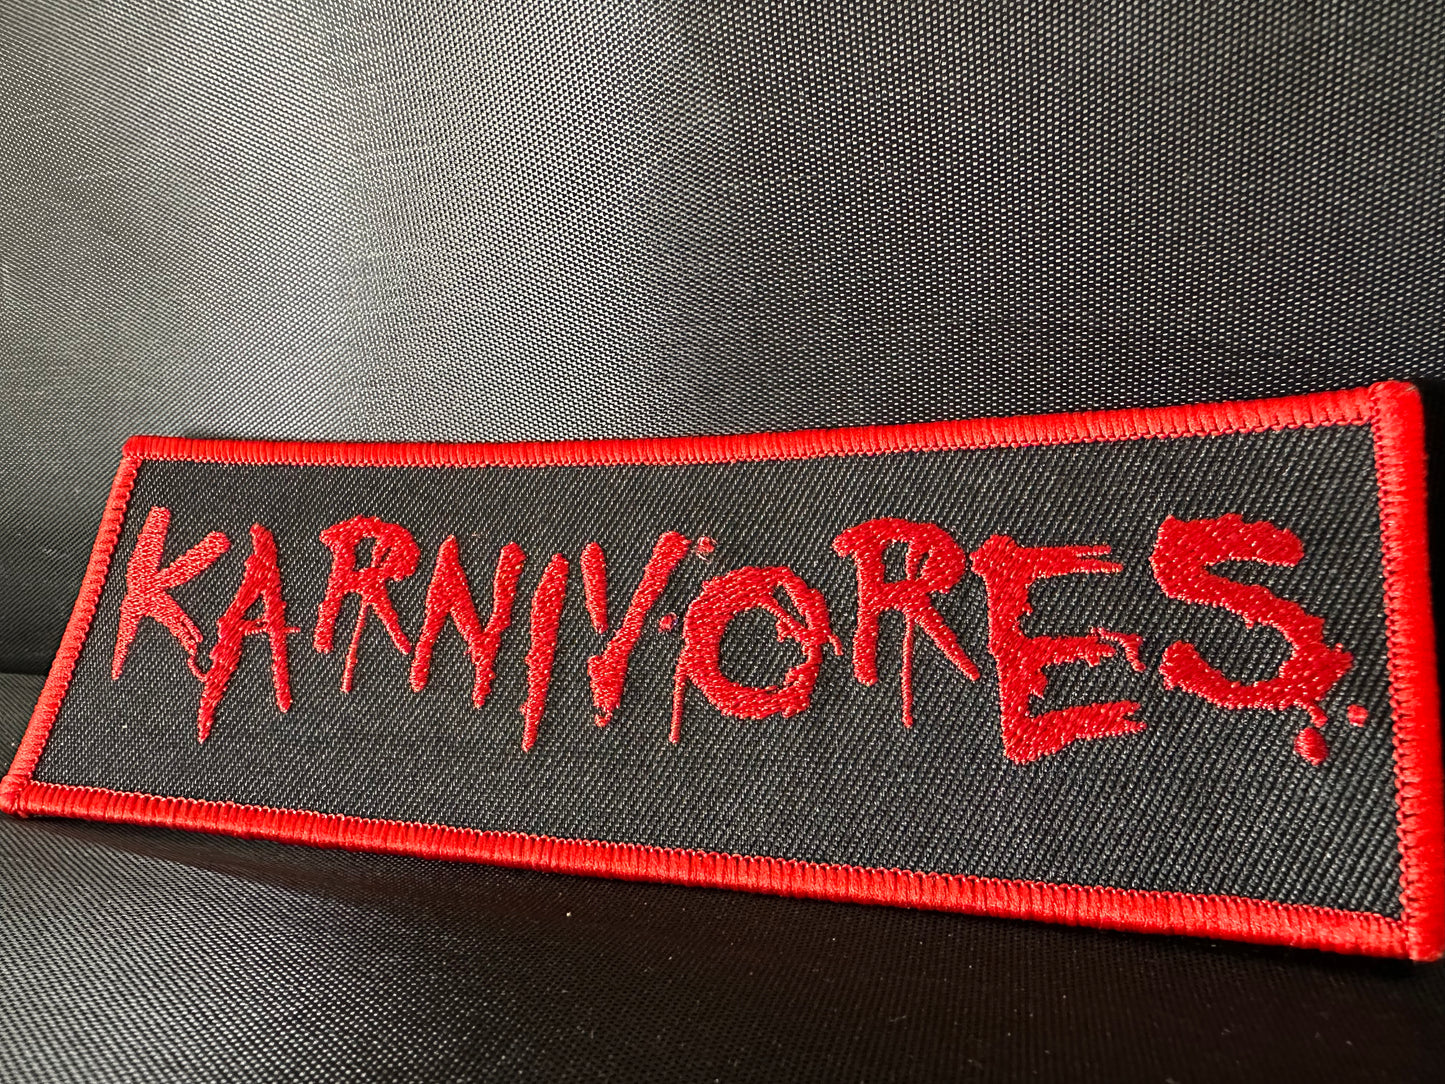 Karnivores OG Patch